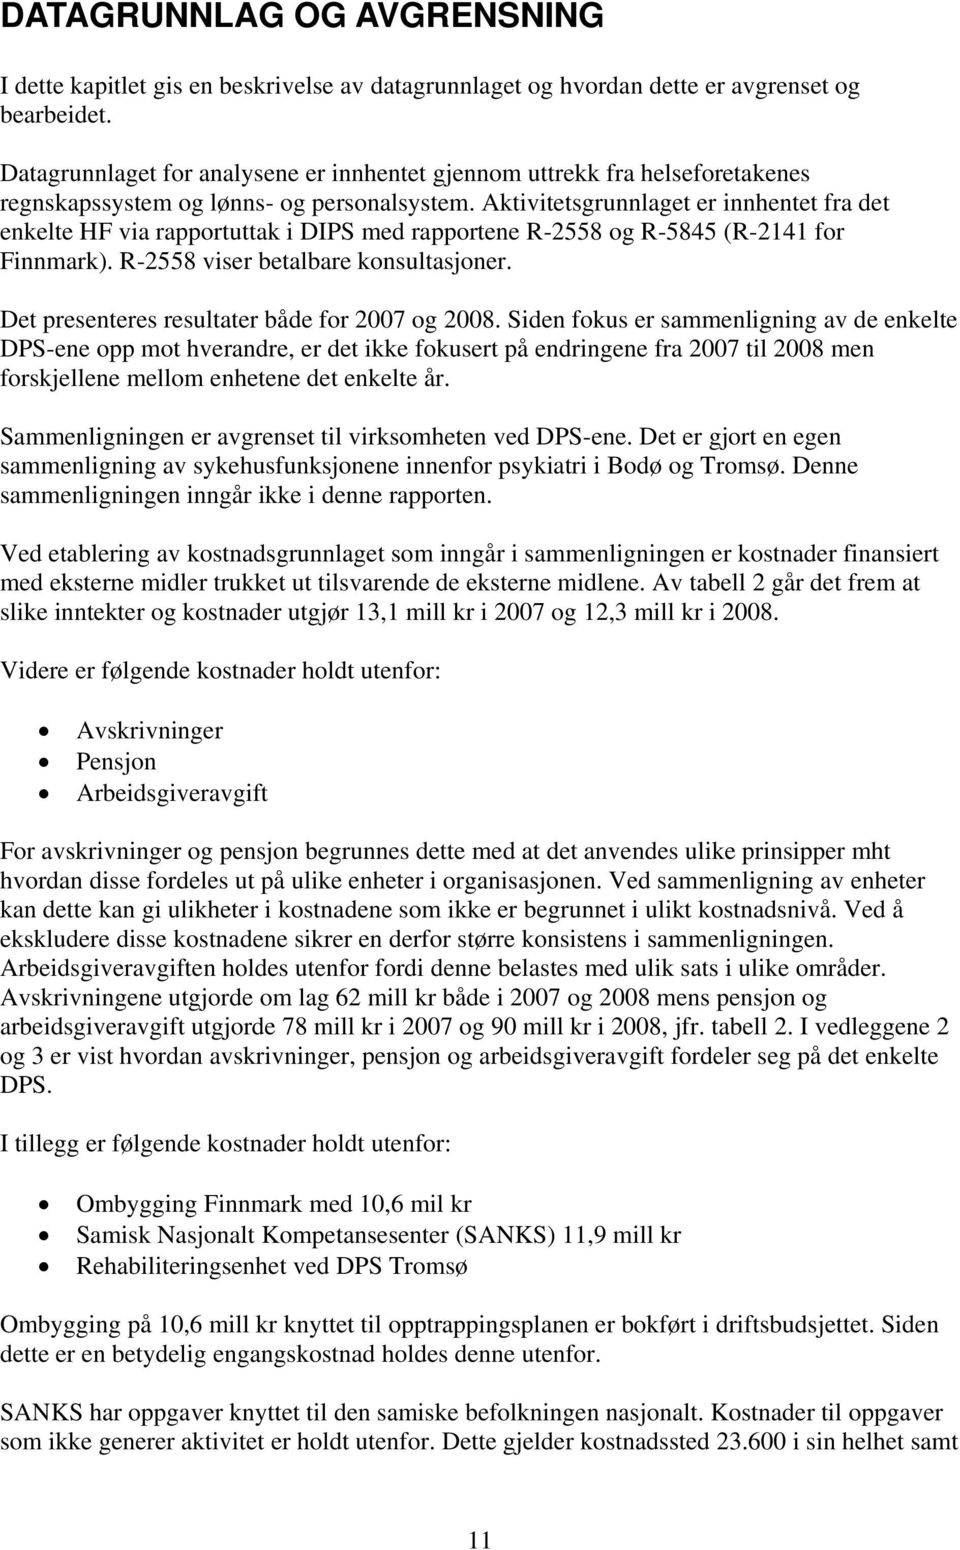 Aktivitetsgrunnlaget er innhentet fra det enkelte HF via rapportuttak i DIPS med rapportene R-2558 og R-5845 (R-2141 for Finnmark). R-2558 viser betalbare konsultasjoner.